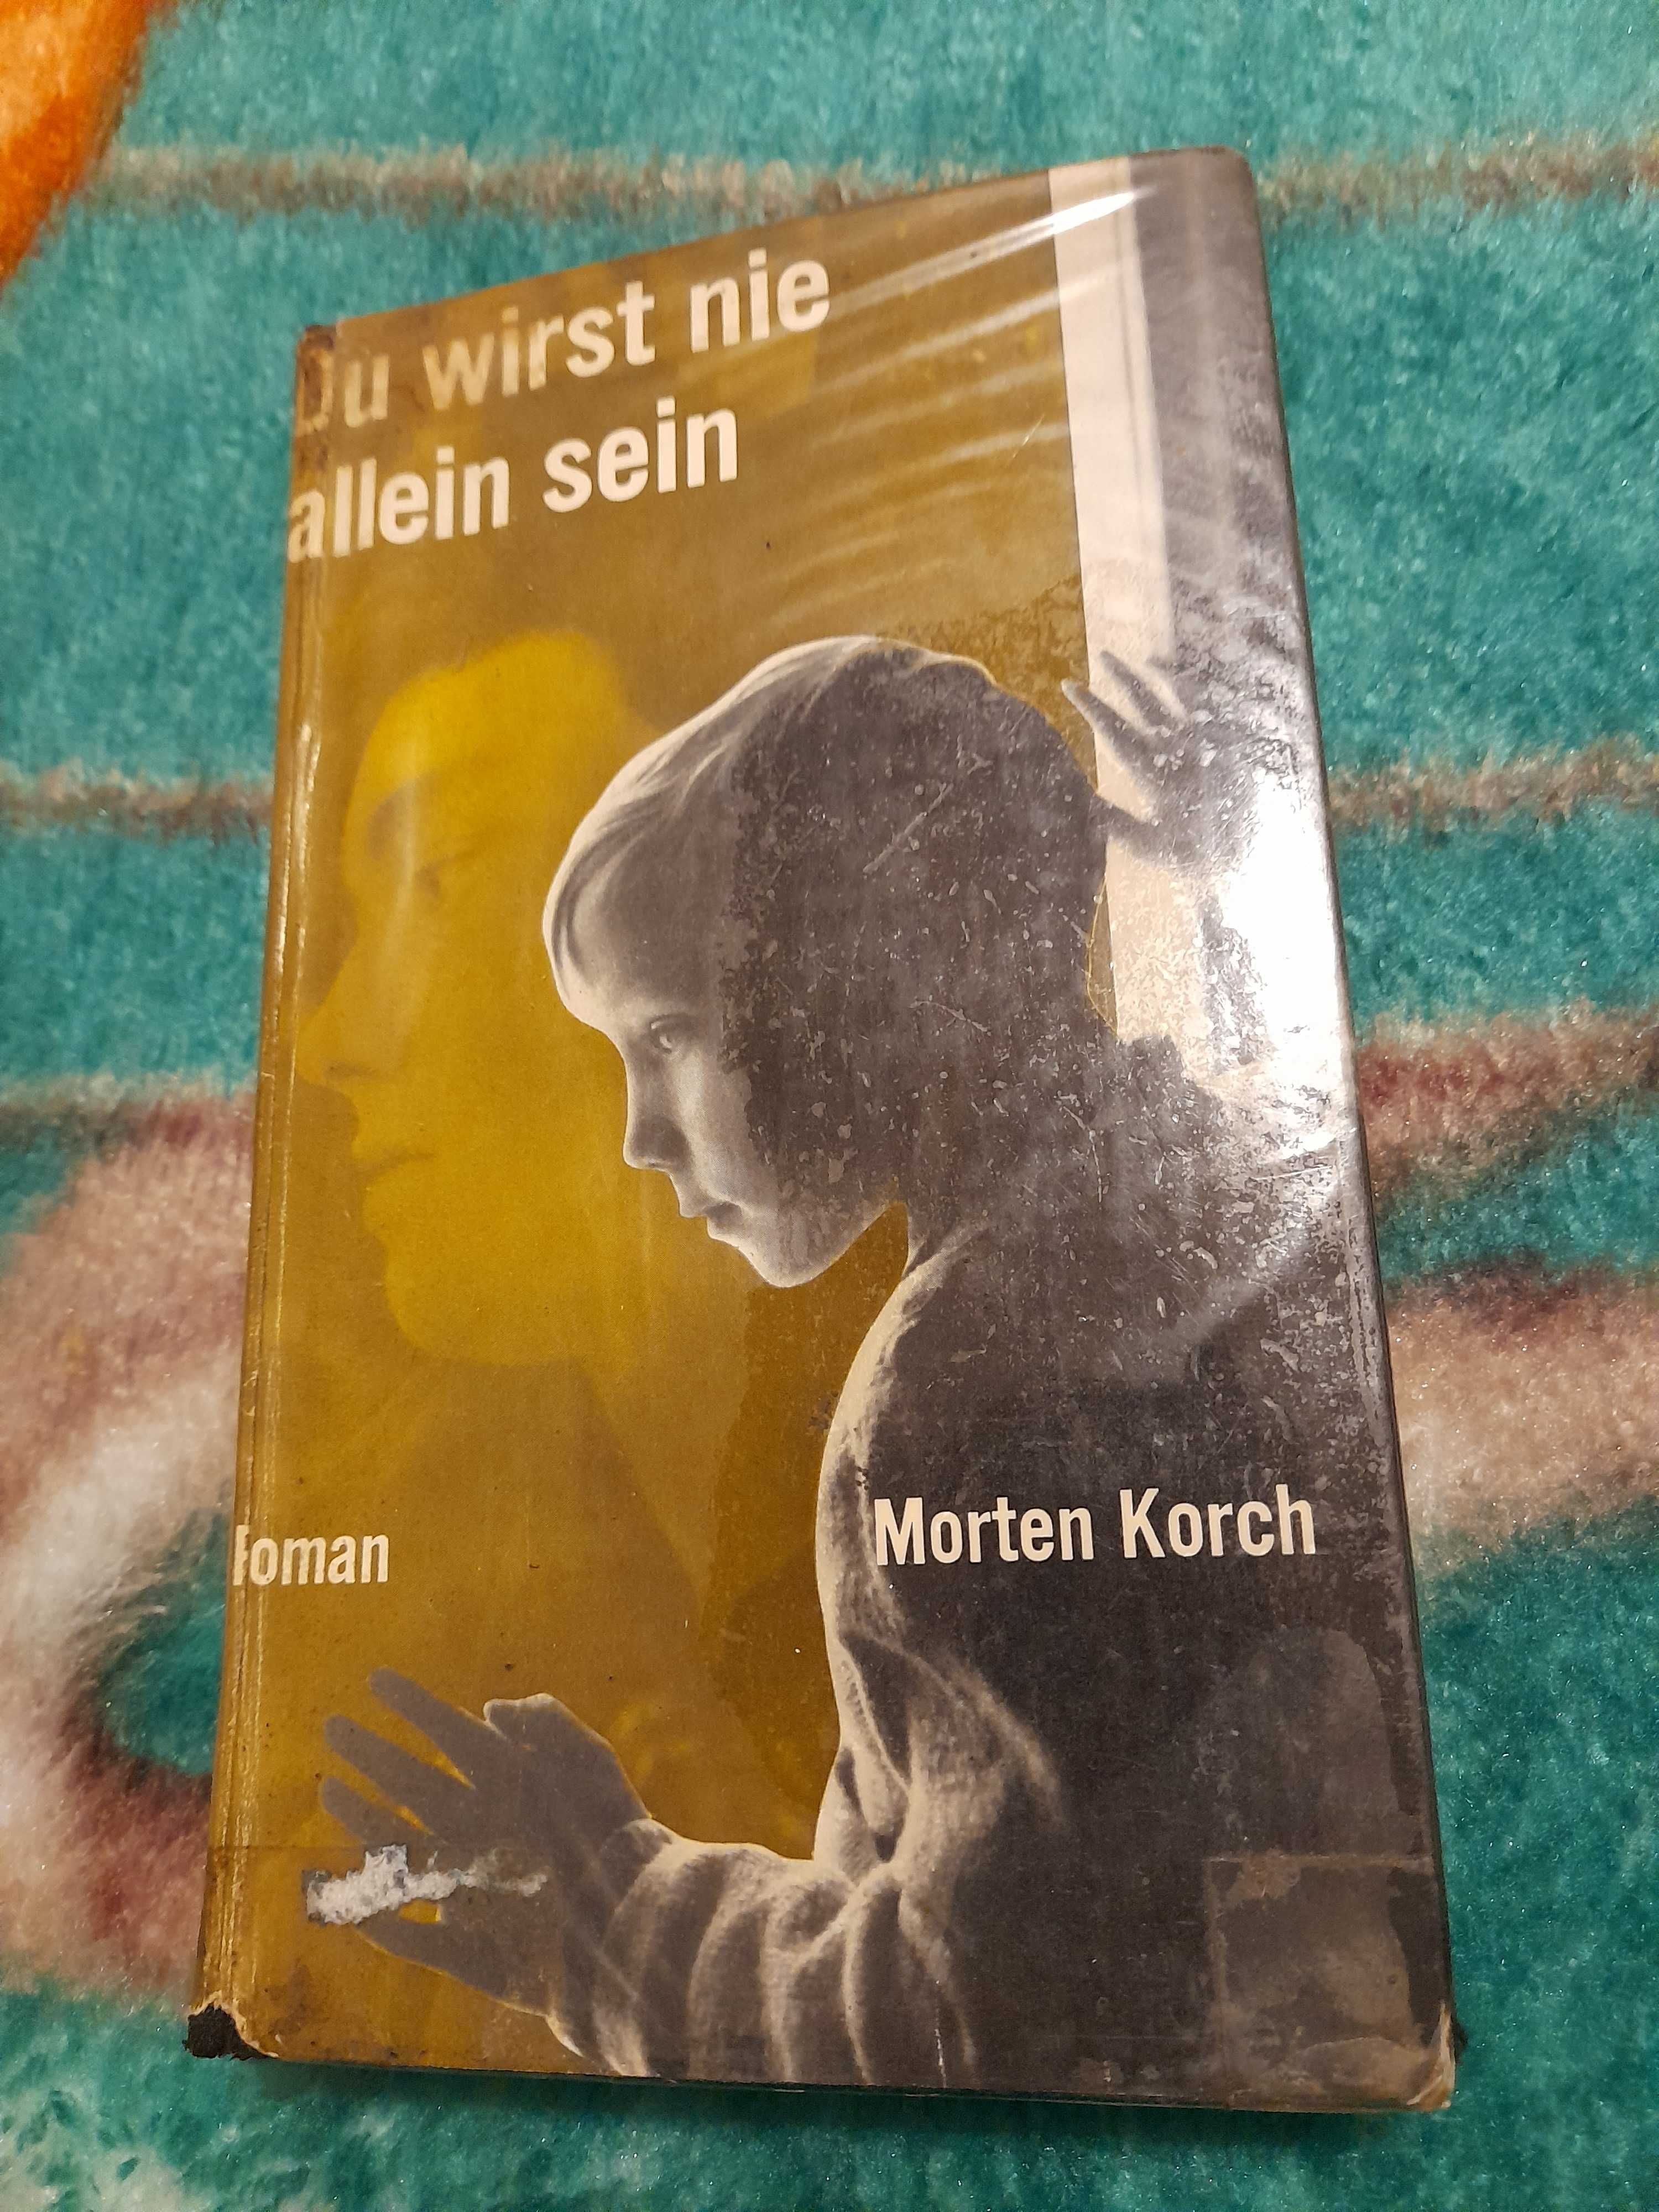 Sprzedam książkę "Du wirst nie allein sein" Morten Korch